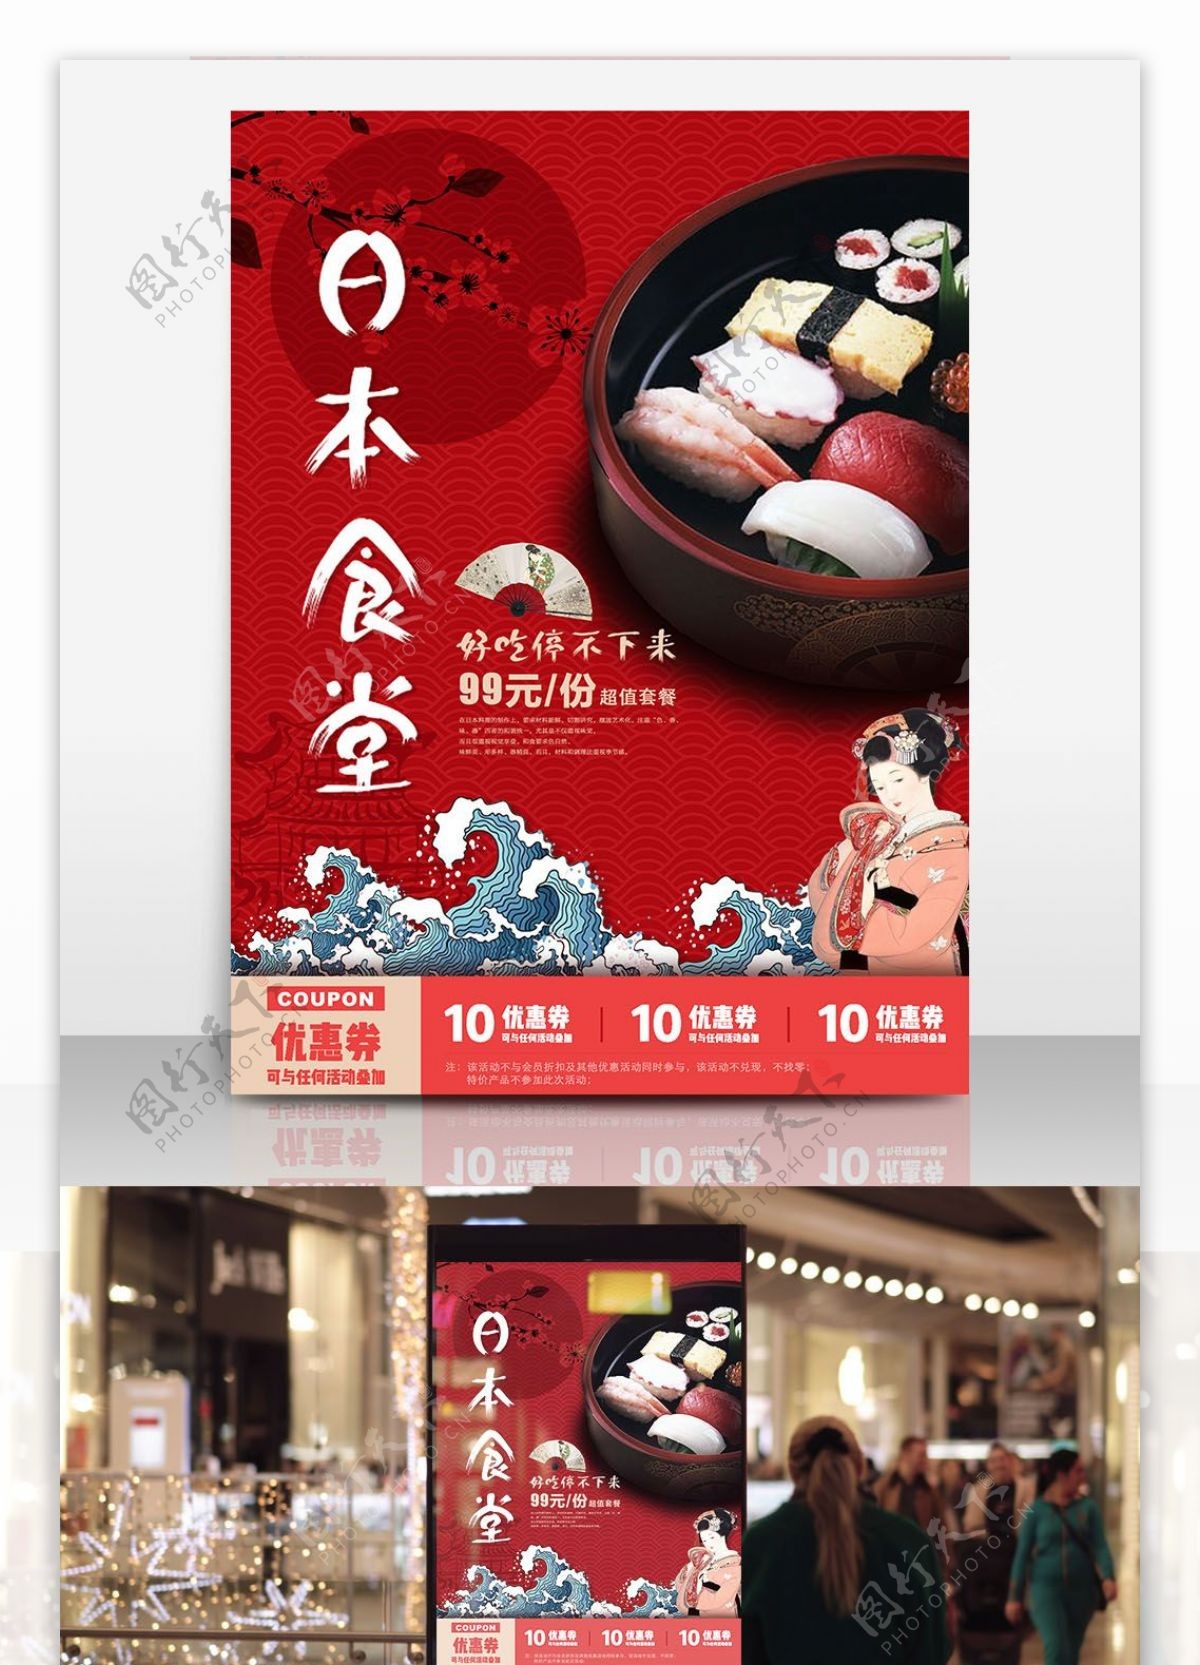 日本食堂餐馆美食宣传促销海报